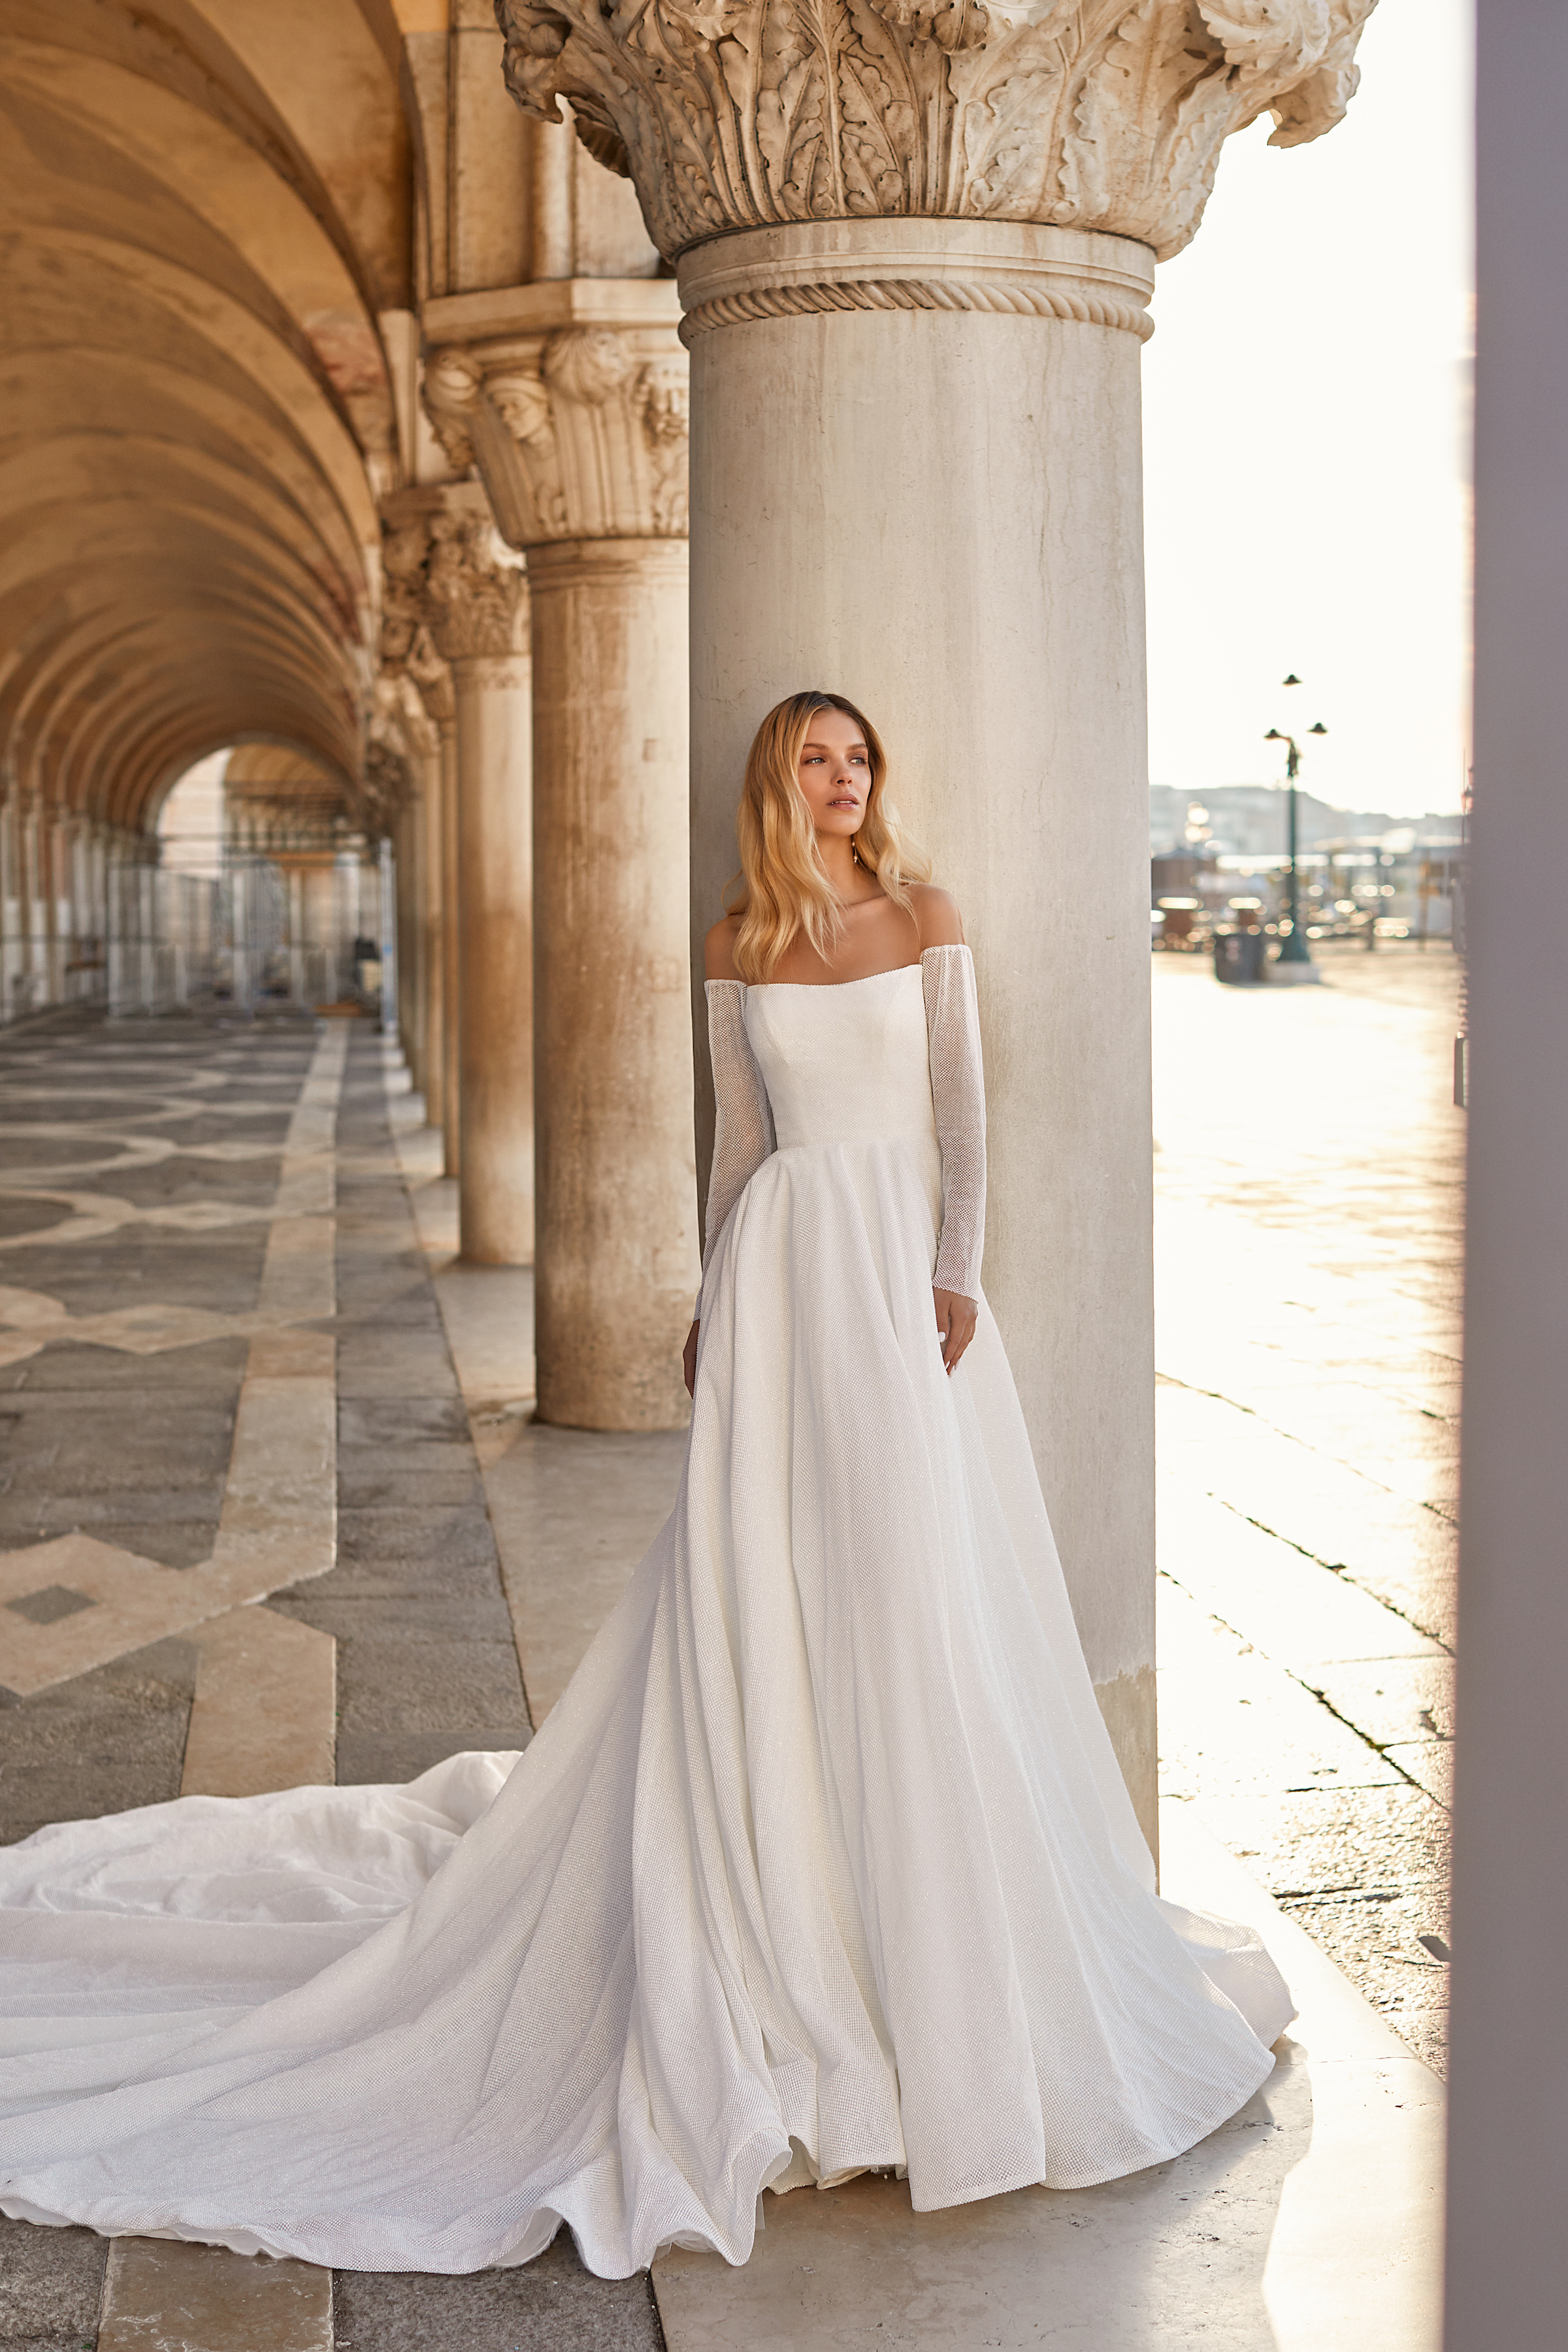 Caroline by Katy Corso wedding dress